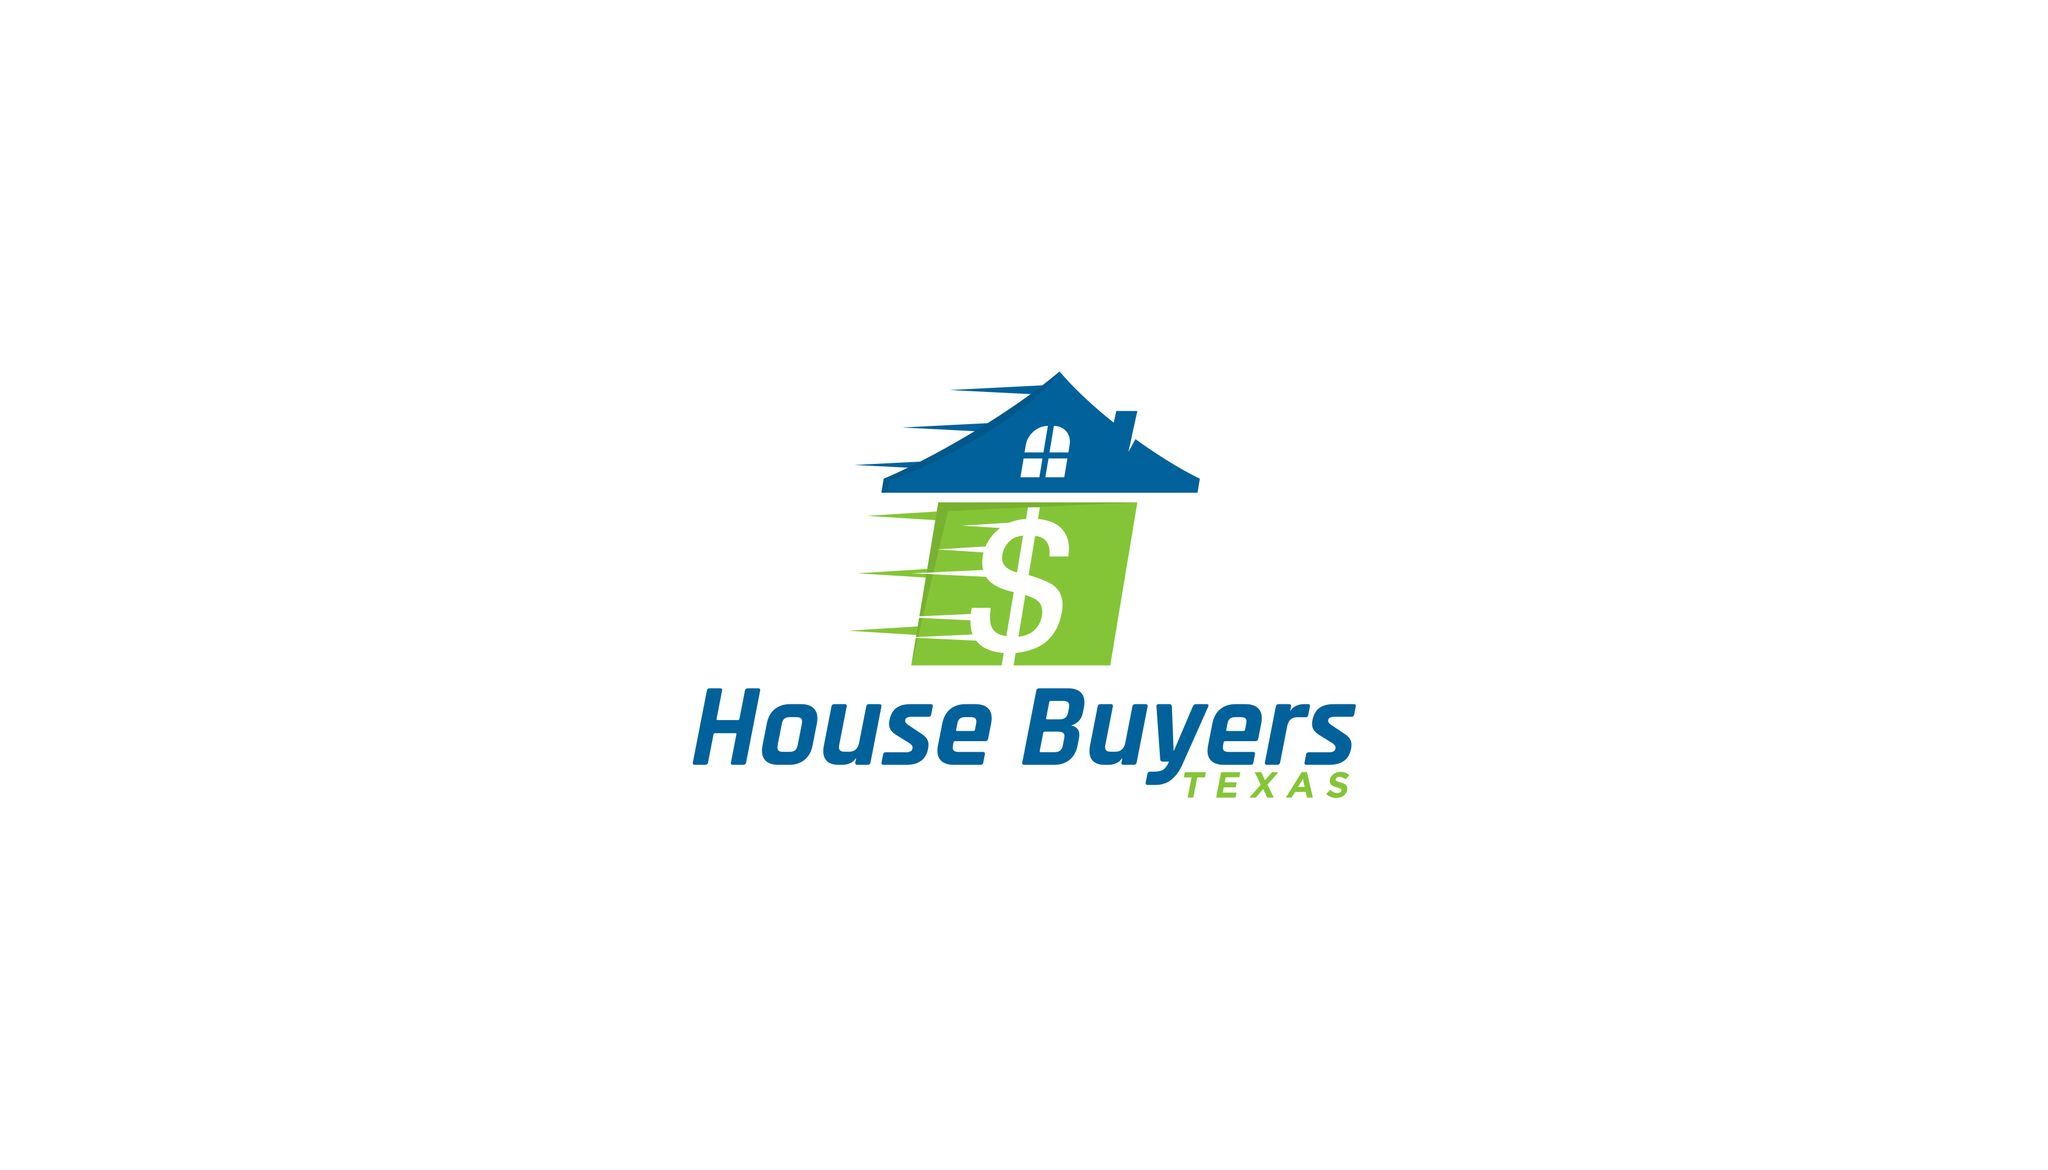 House-Buyers-Texas-3.jpg